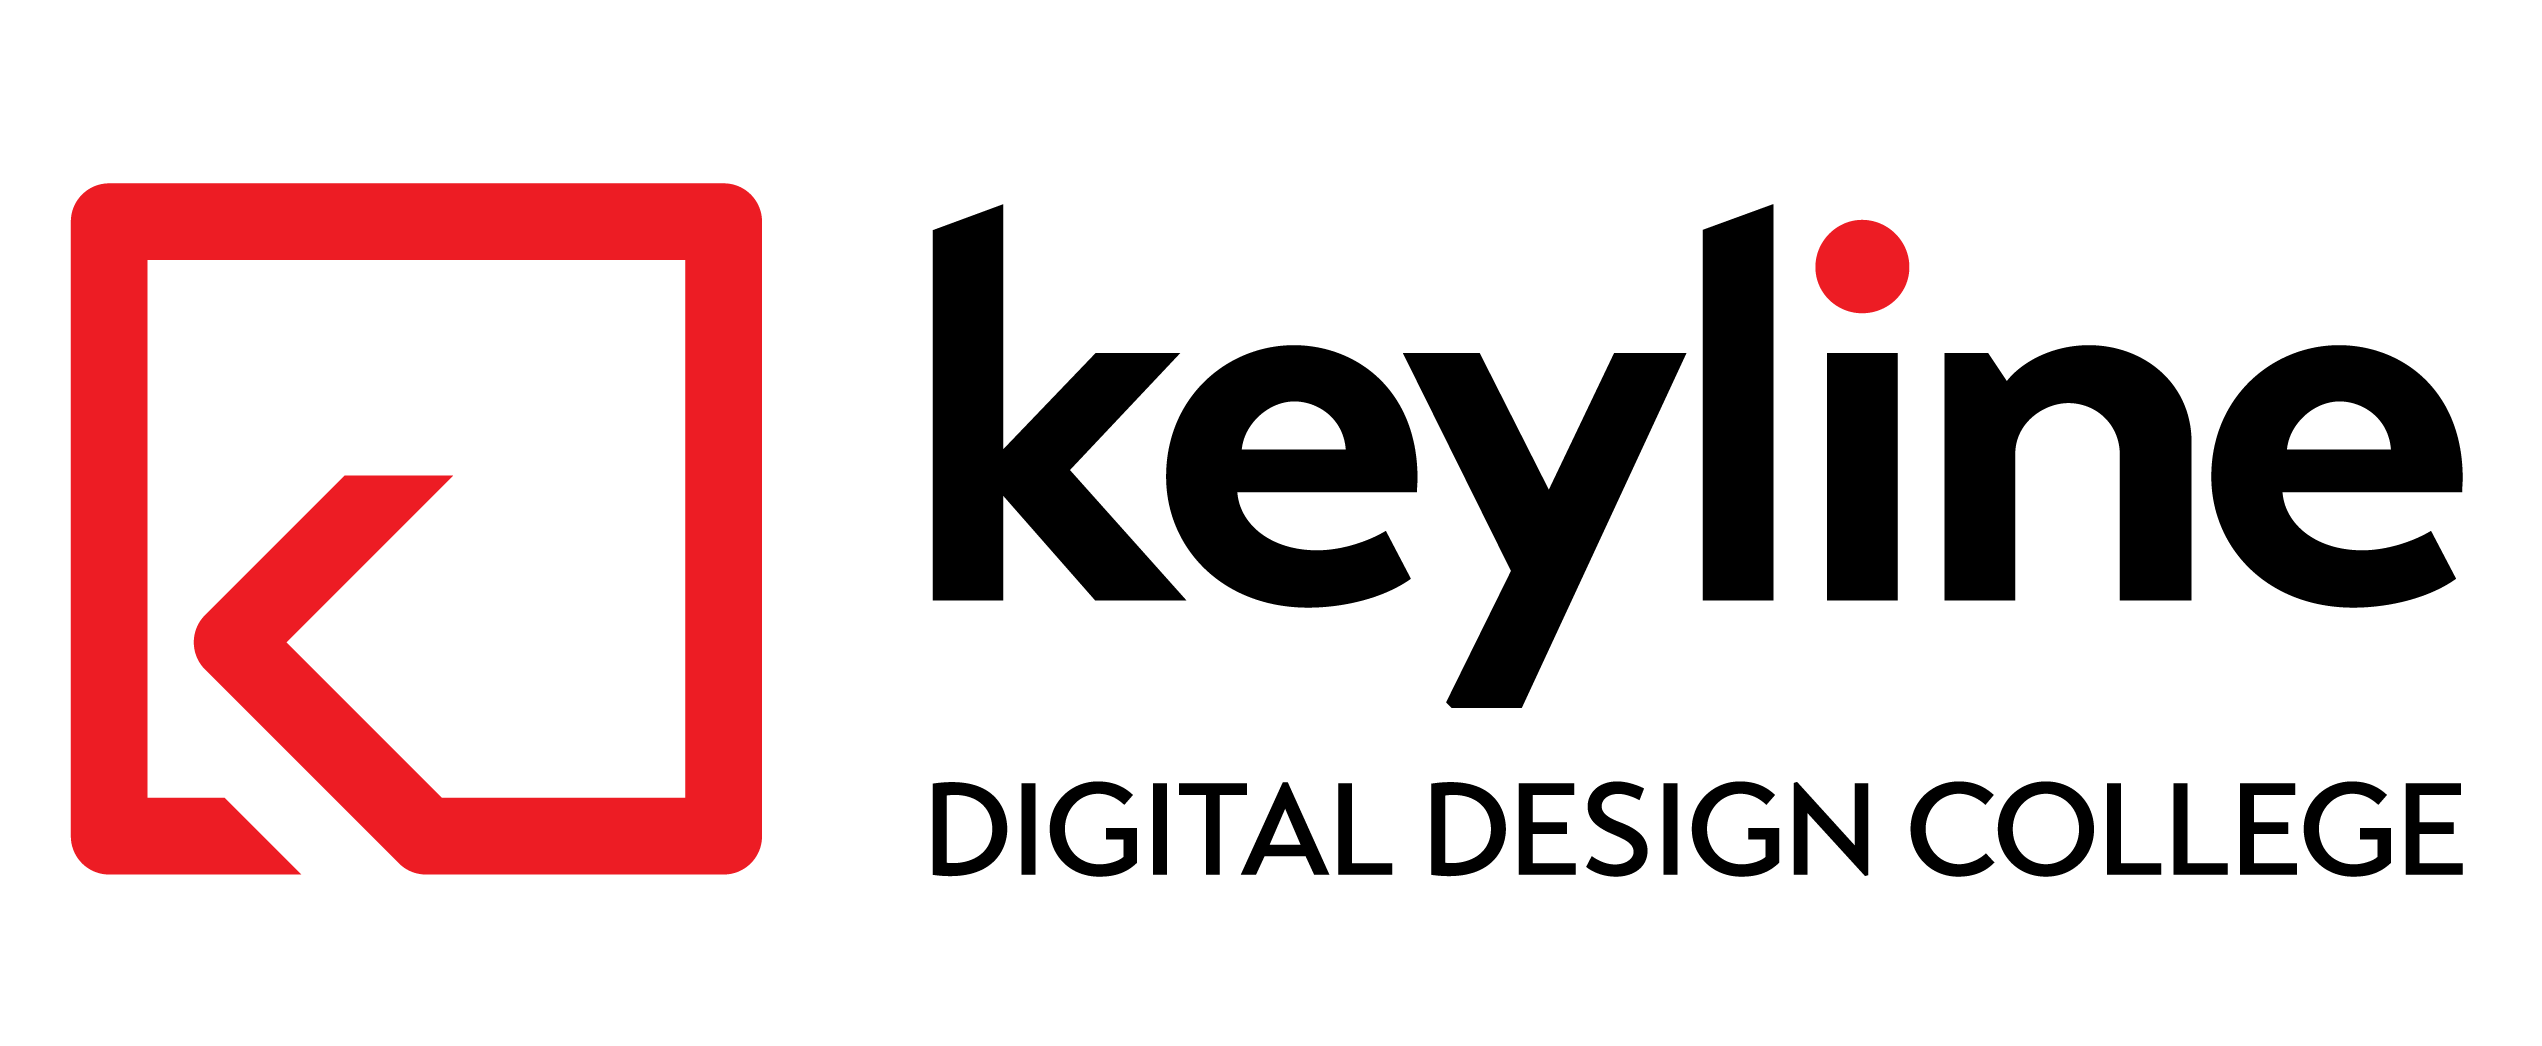 Keyline Digital Design College Logo